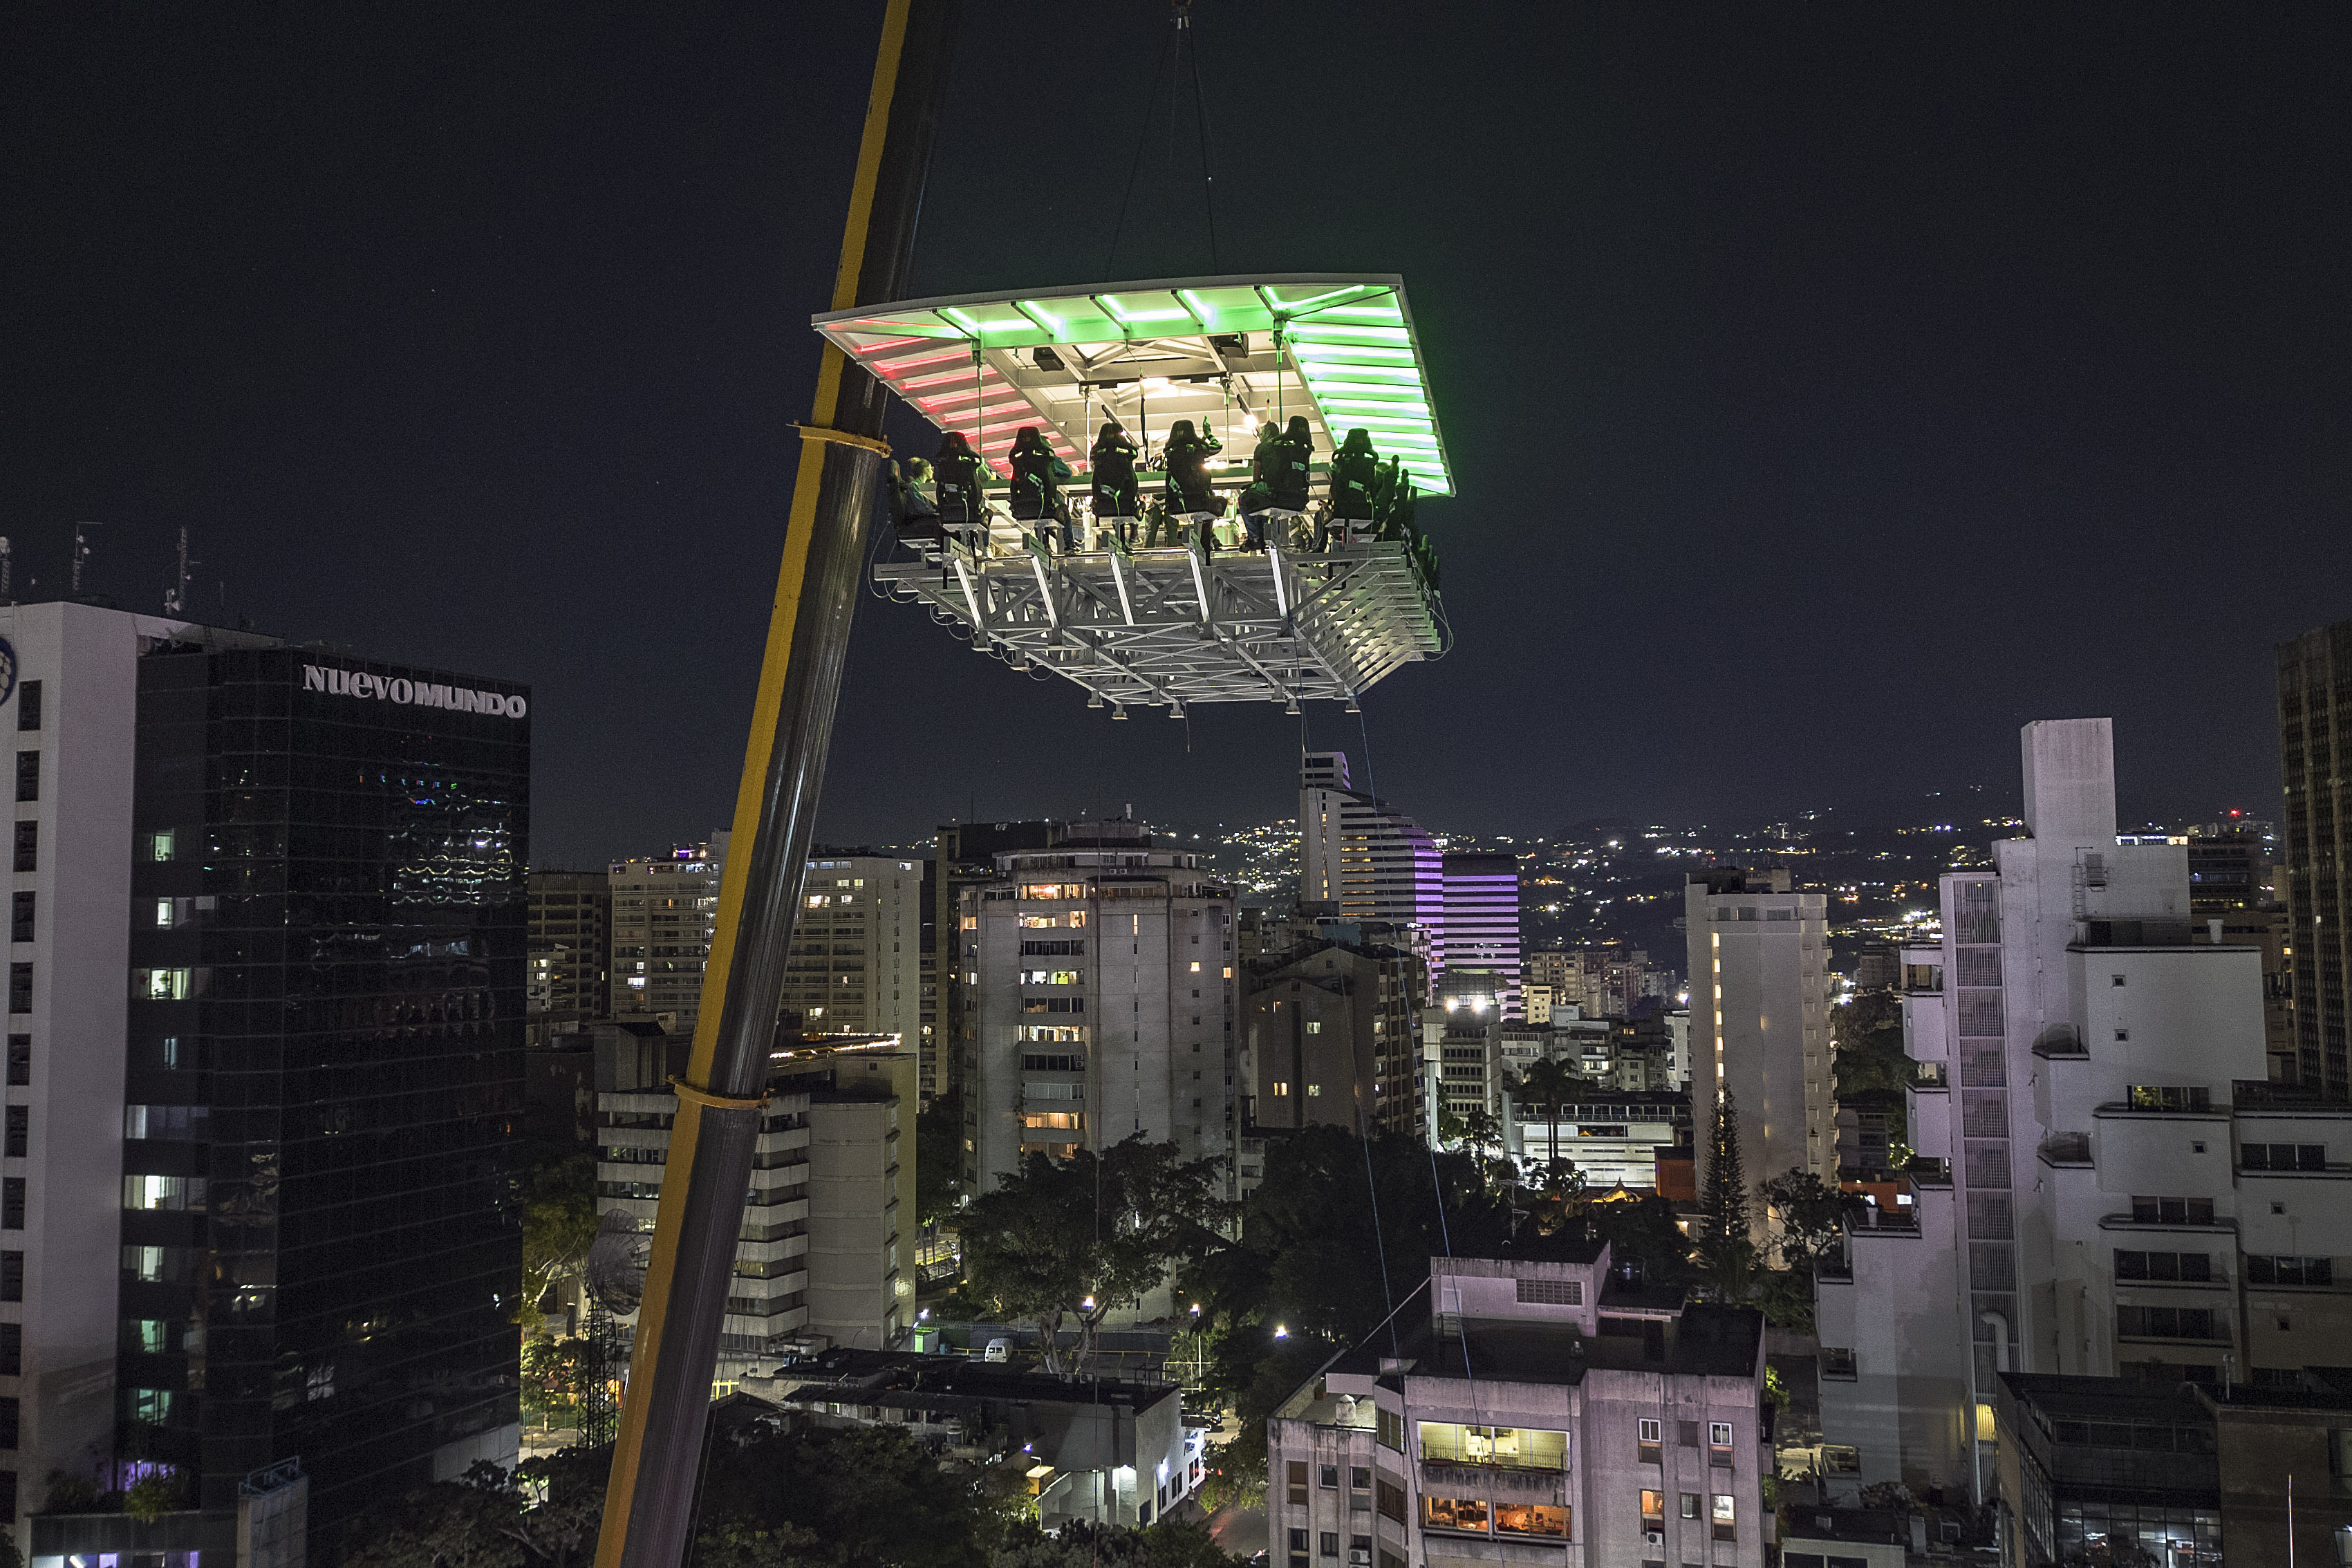 Unas personas cenan en el aire en el restaurante Altum de Caracas (AP Foto/Matias Delacroix)